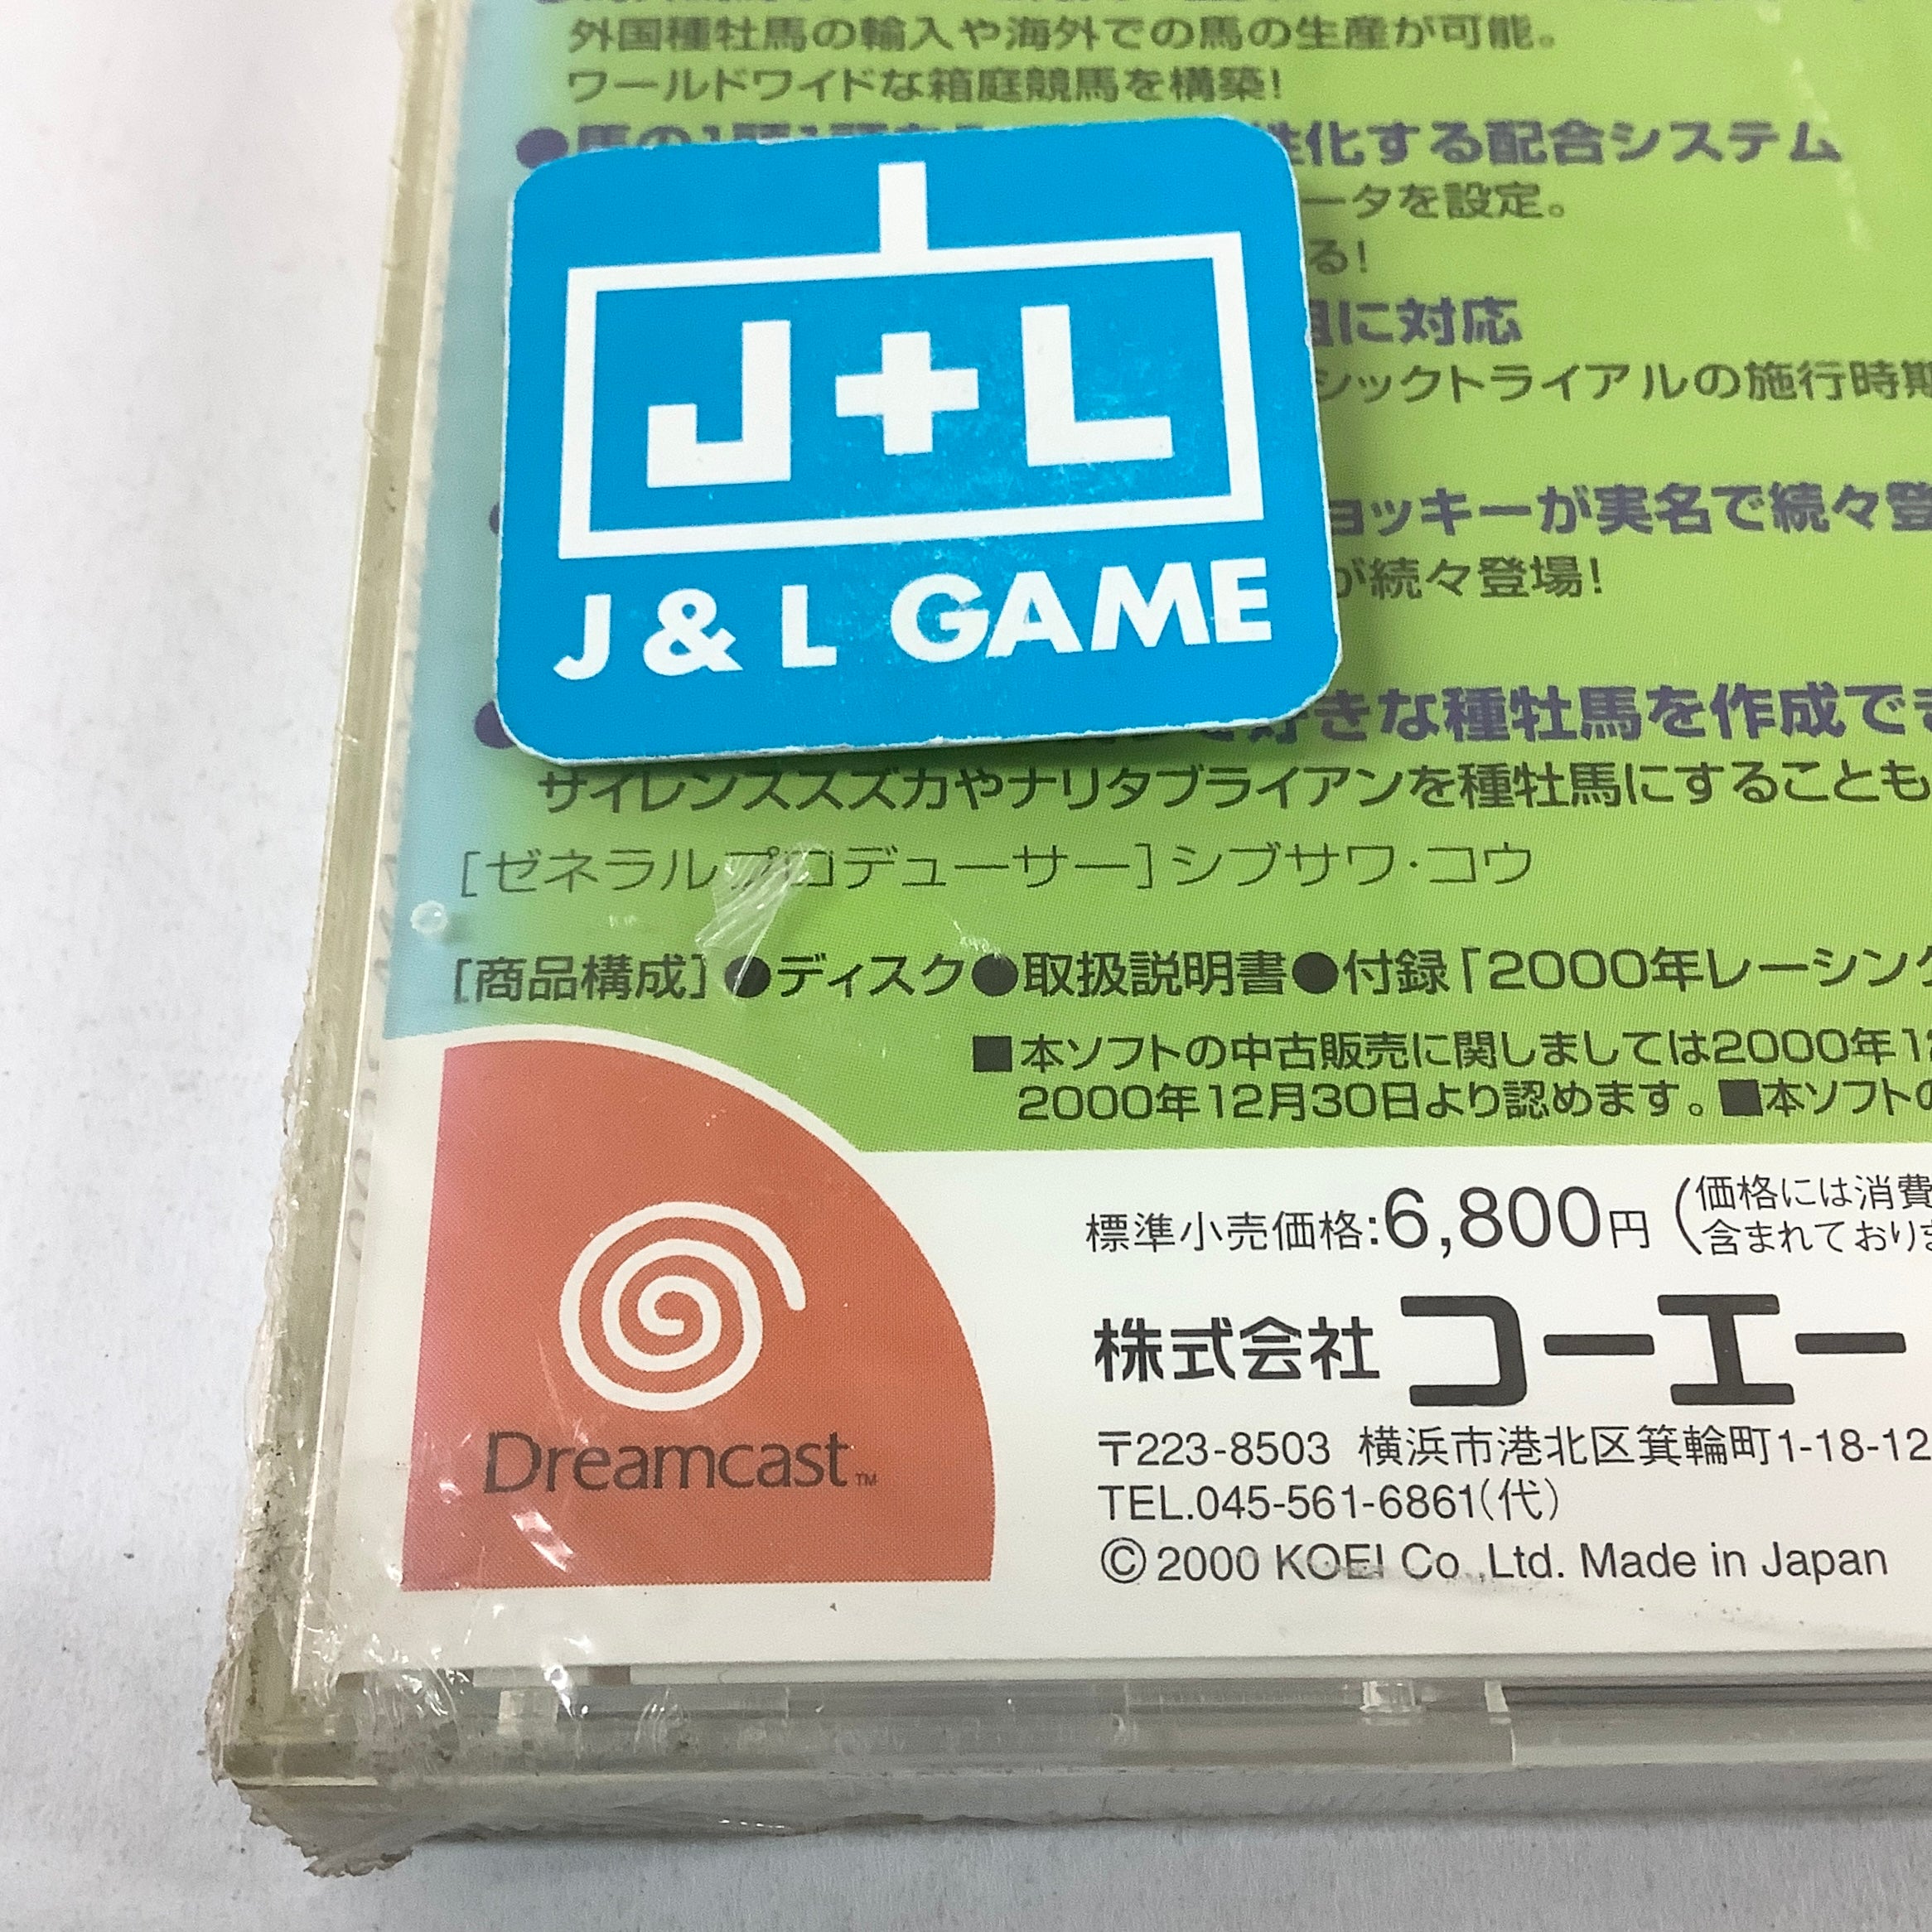 Winning Post 4 Program 2000 - (DC) SEGA Dreamcast (Japanese Import) Video Games Koei   